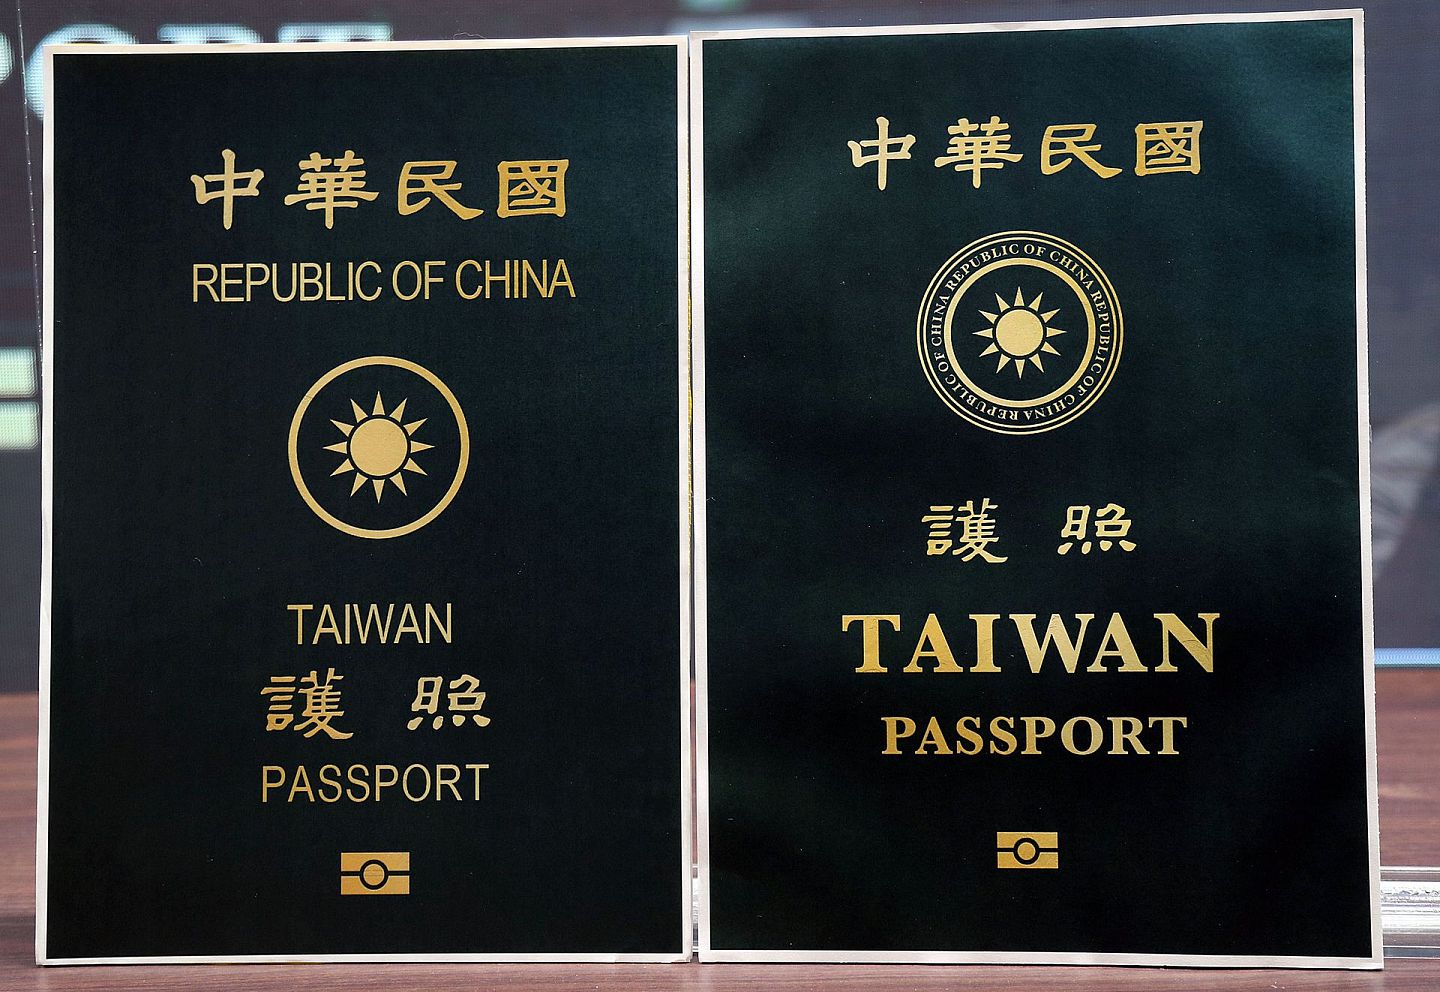 2020年9月2日台湾外交部公布台湾护照第18次改版（右），与前一版对照，TAIWAN 明显变大，Republic of China变成青天白日“国徽”的环缀。 （多维新闻）